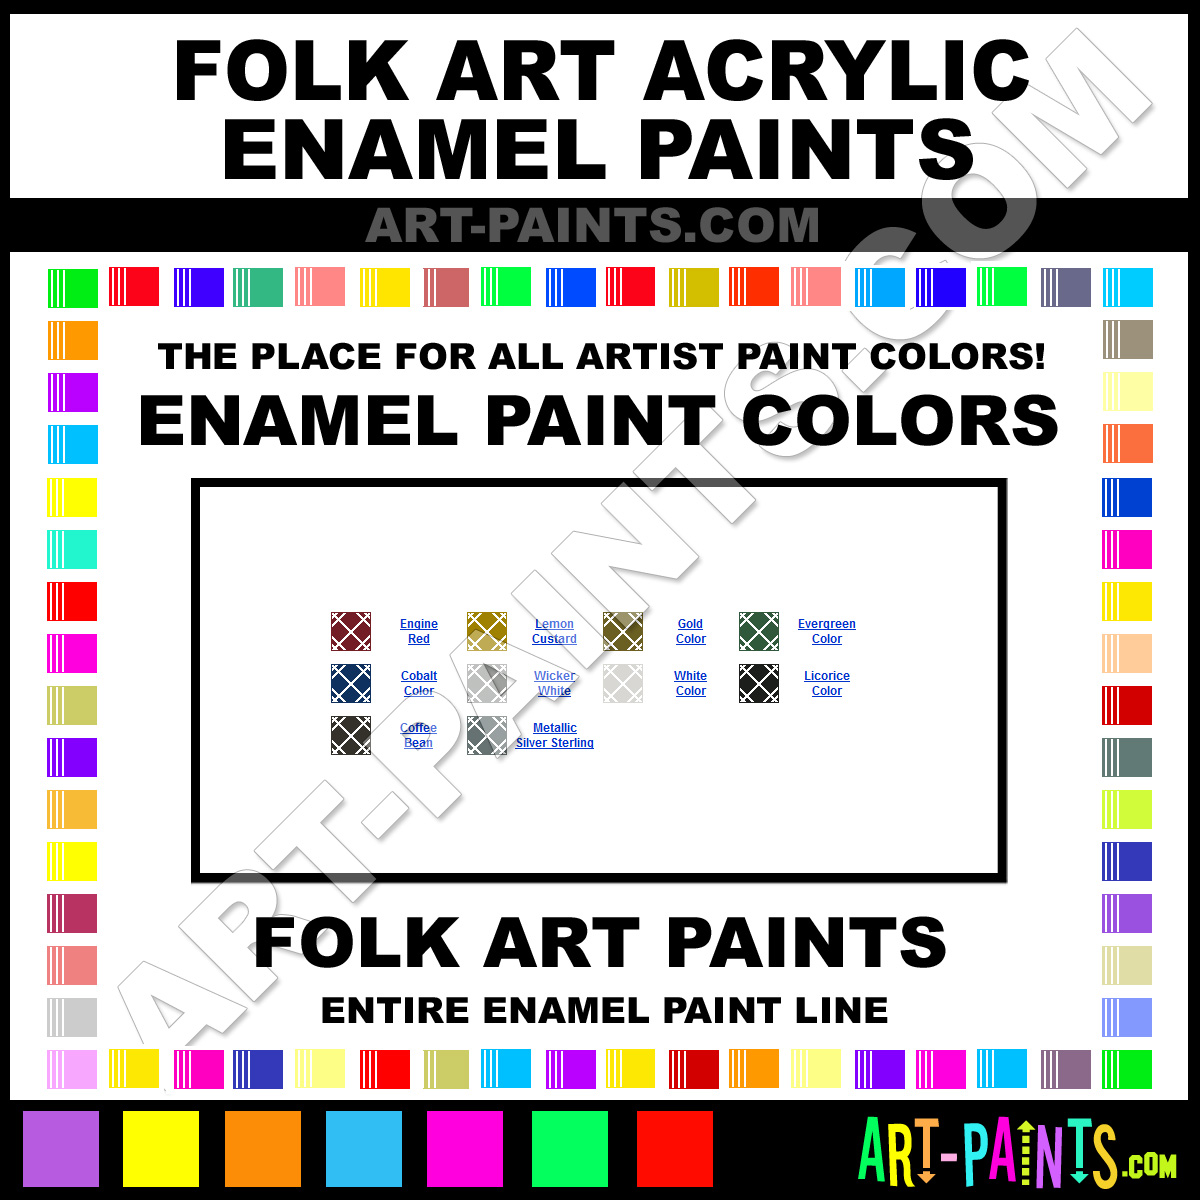 Folk Art Acrylic Enamel Paint Colors - Folk Art Acrylic Paint